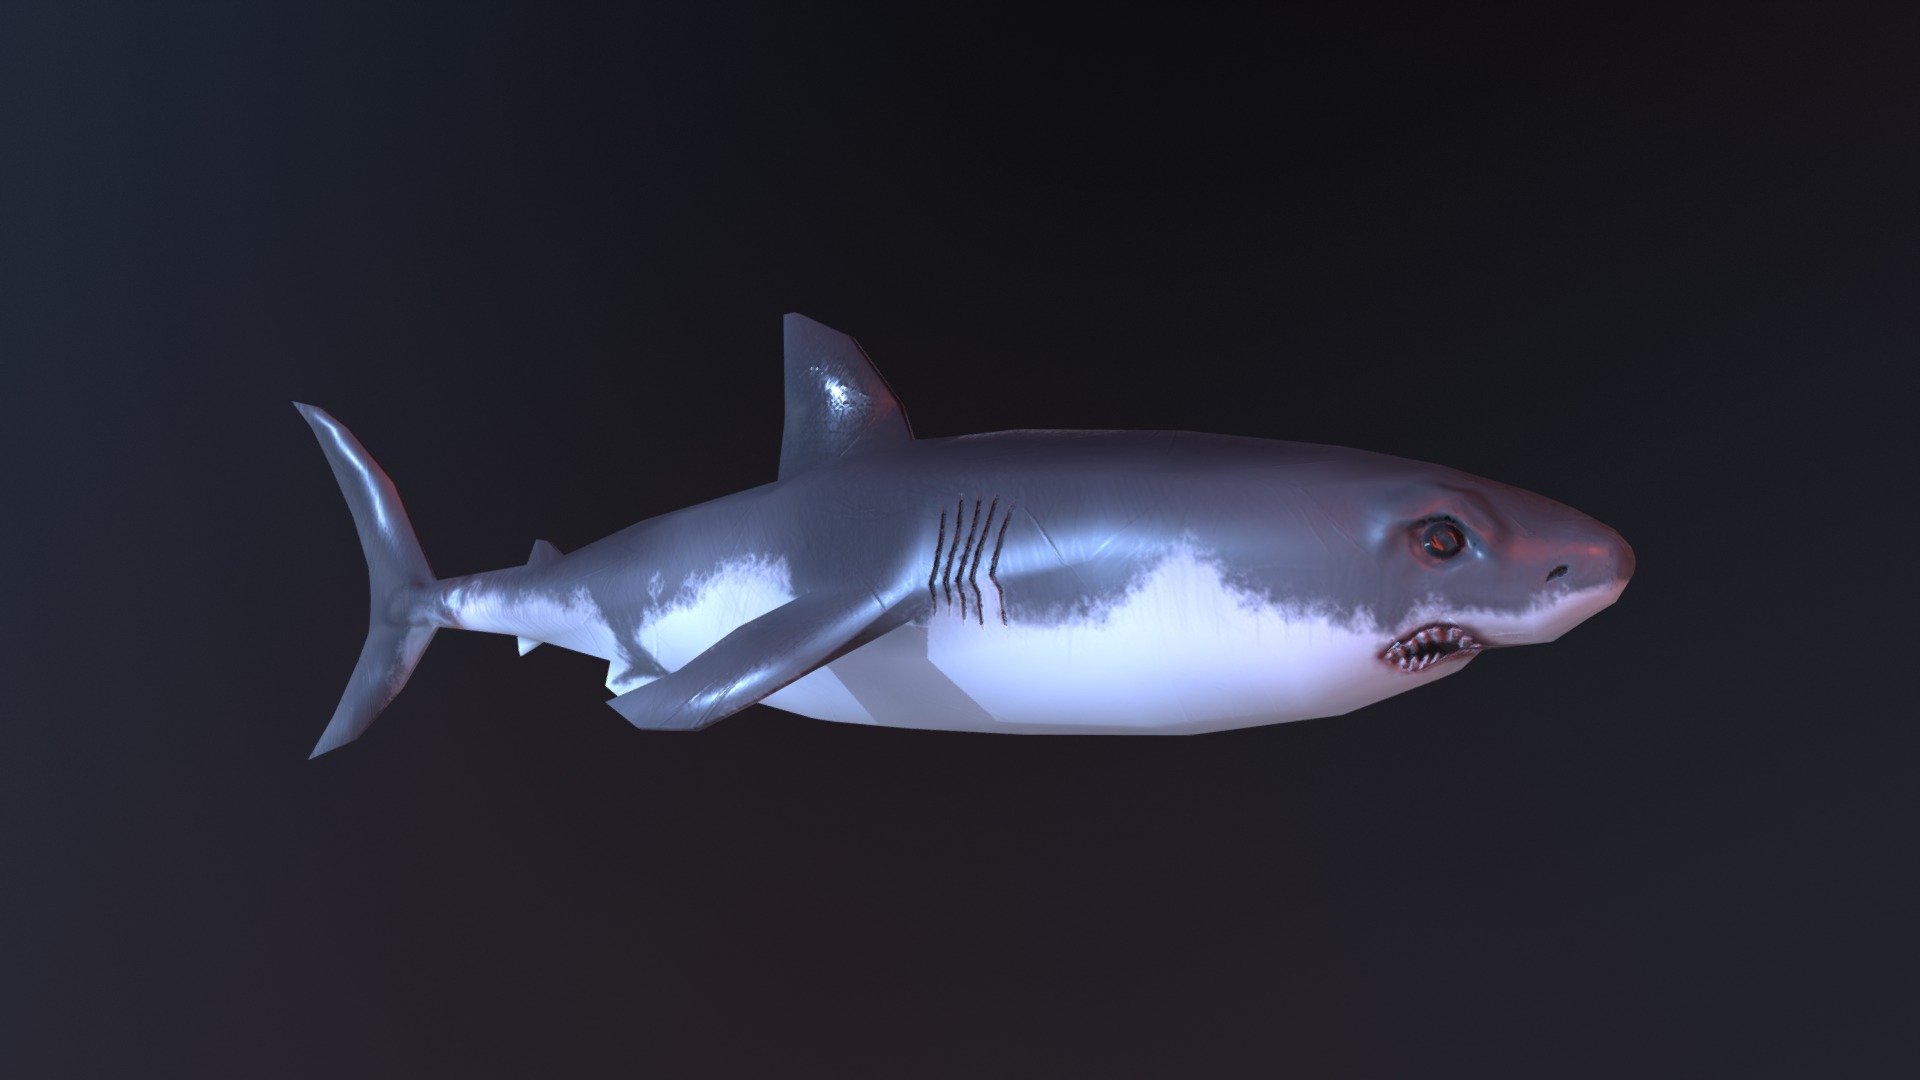 shark 3d model by gabriel ansgariusson gabboow 2b70cf7 sketchfab